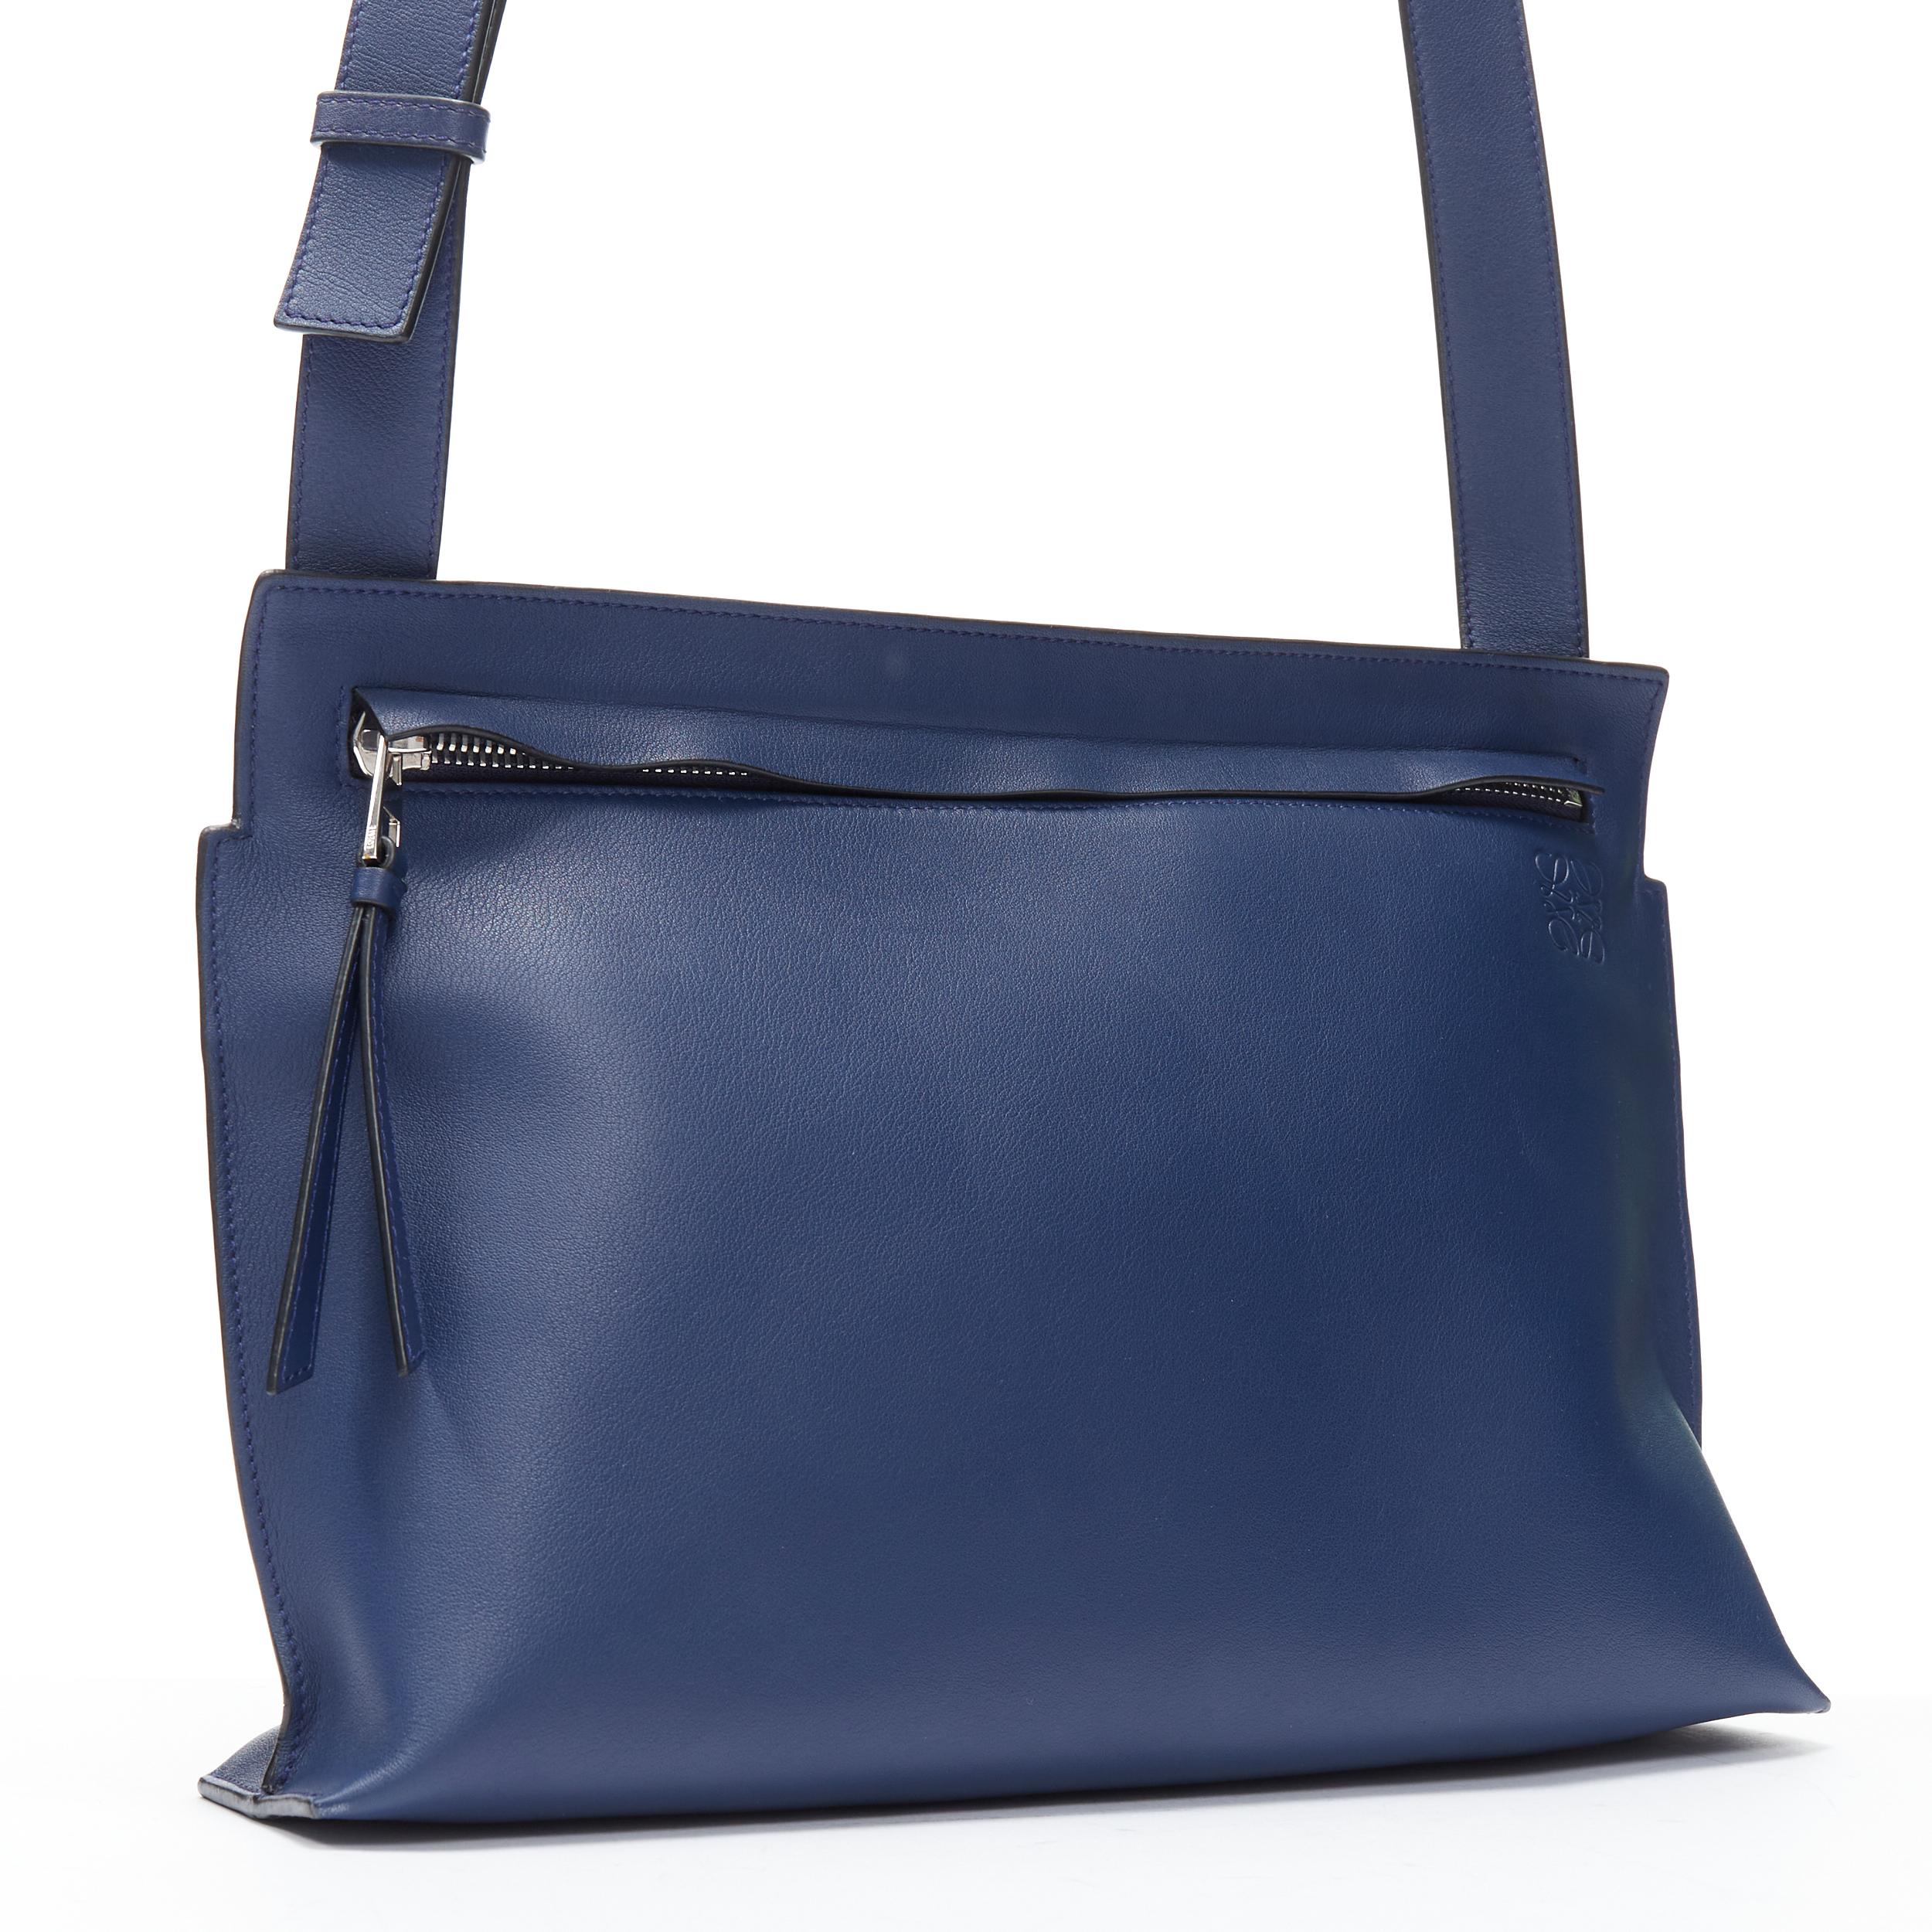 Bleu LOEWE 2017 T Messenger cuir bleu marine logo embossé zip crossbody messenger bag en vente